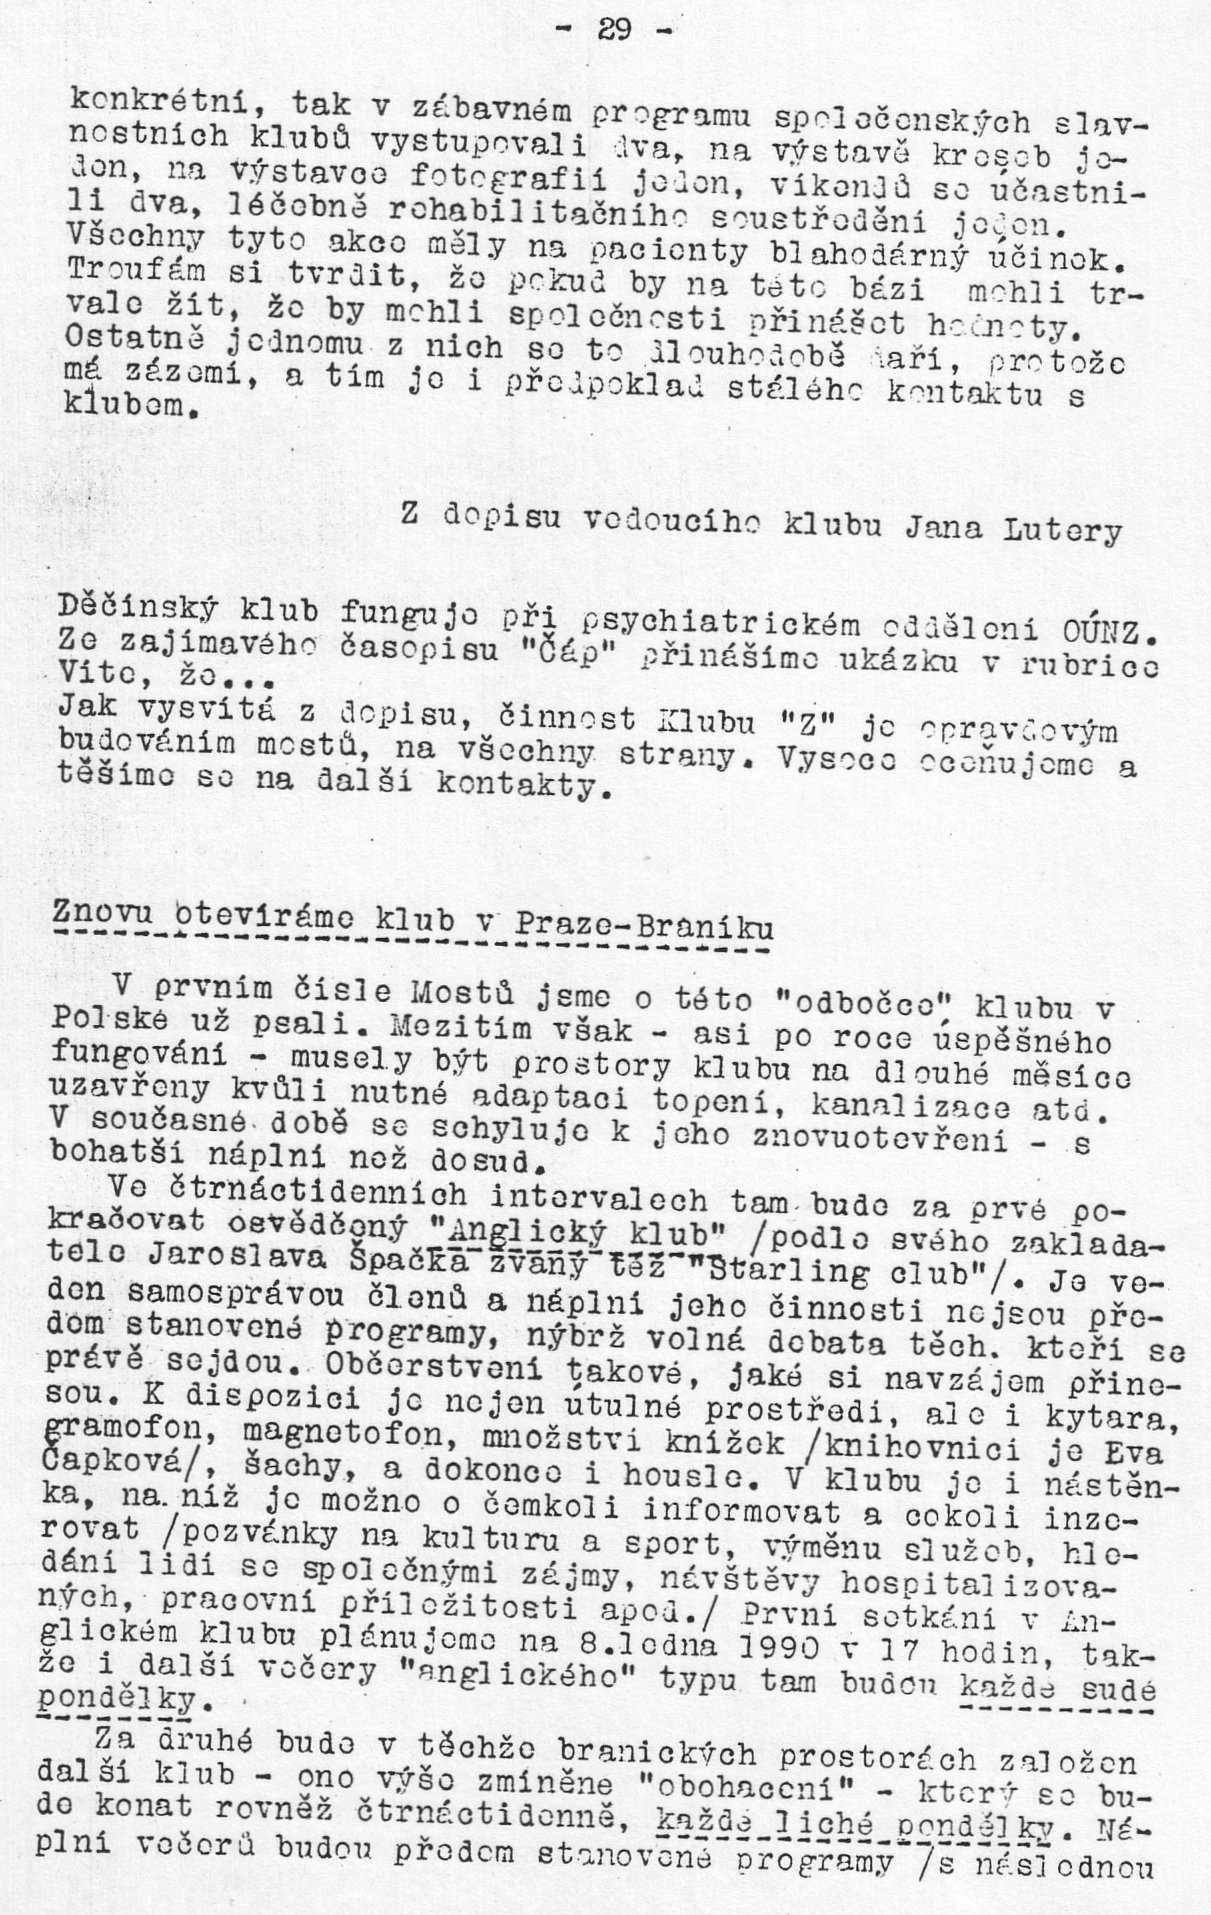 Kluby - strana 29 (asopis Mosty 1989/2)